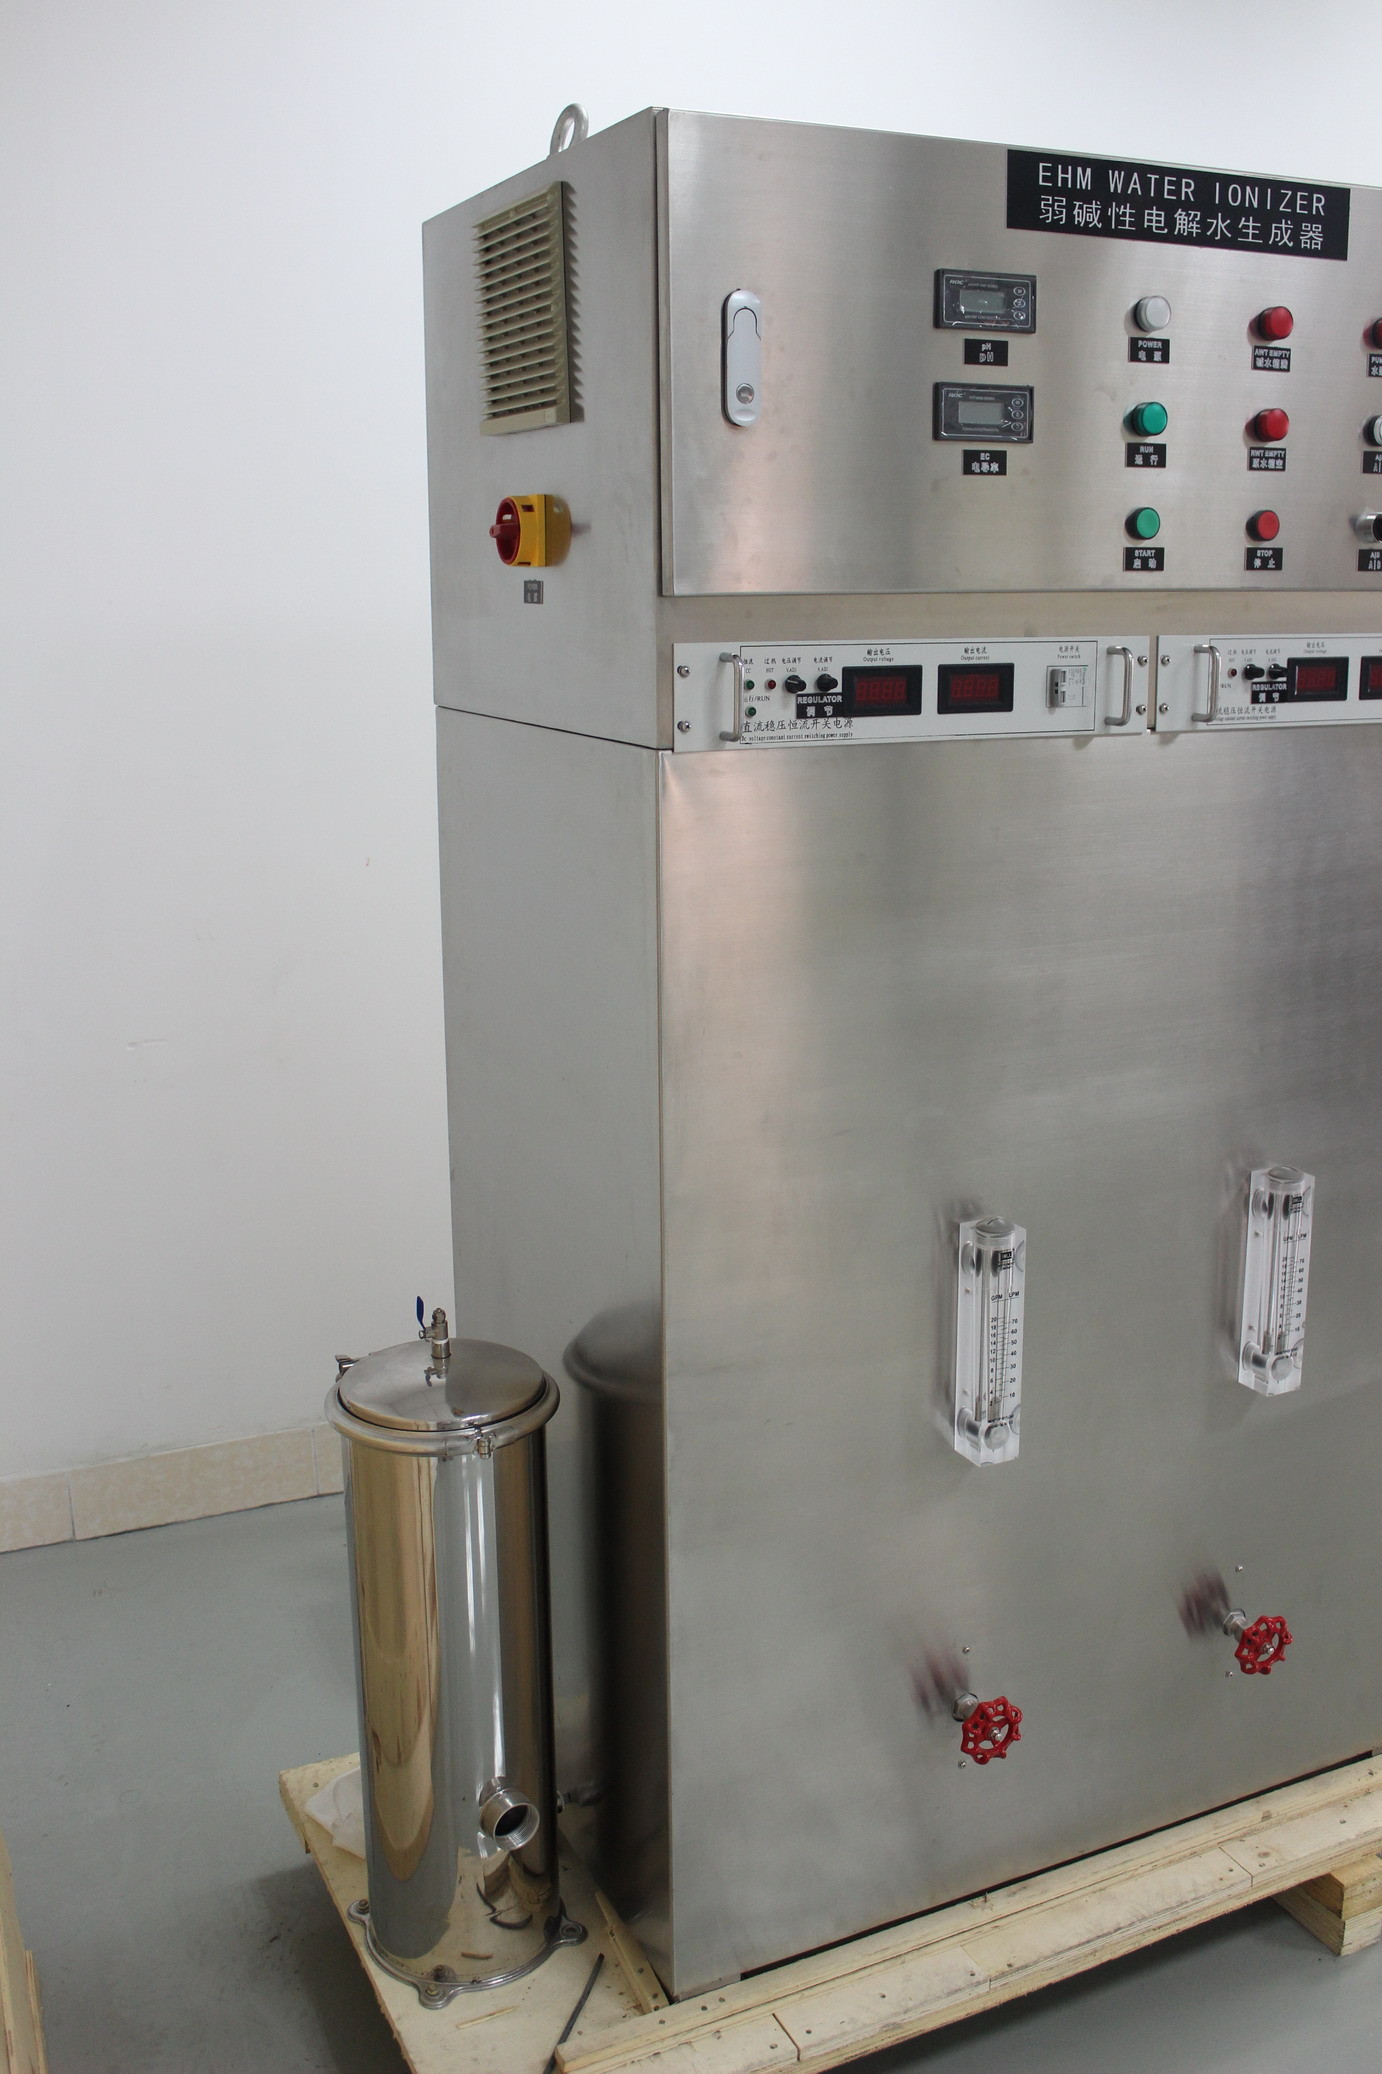 Ionizador comercial respetuoso del medio ambiente incoporating, 440V 50Hz del agua